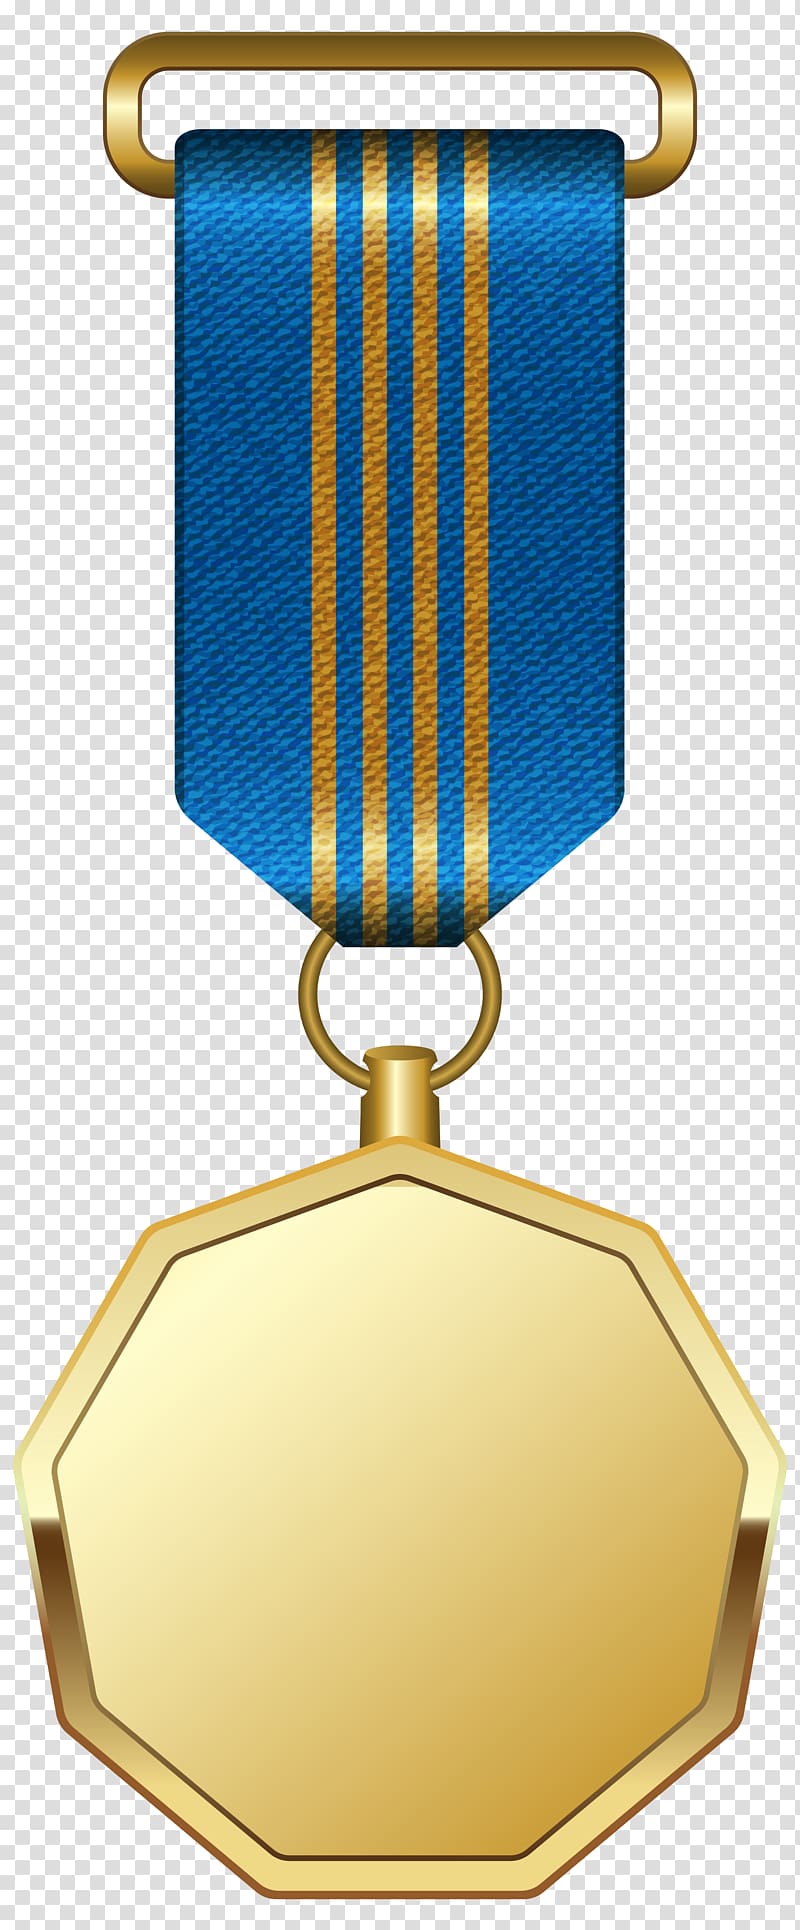 plaque clipart gold medallion